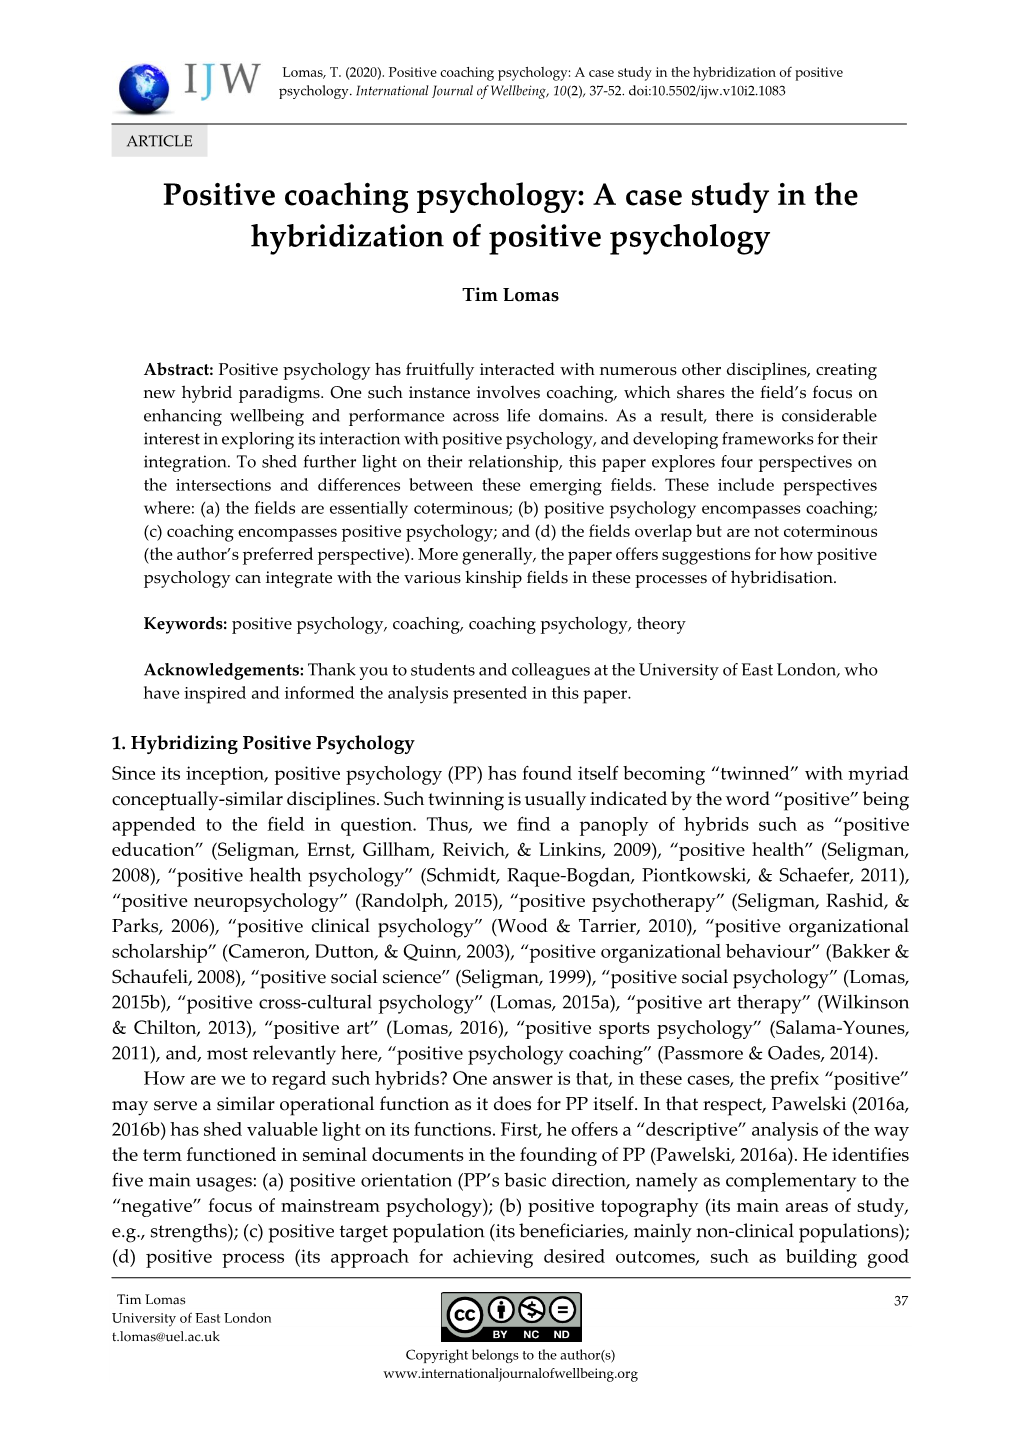 Positive Coaching Psychology: a Case Study in the Hybridization of Positive Psychology